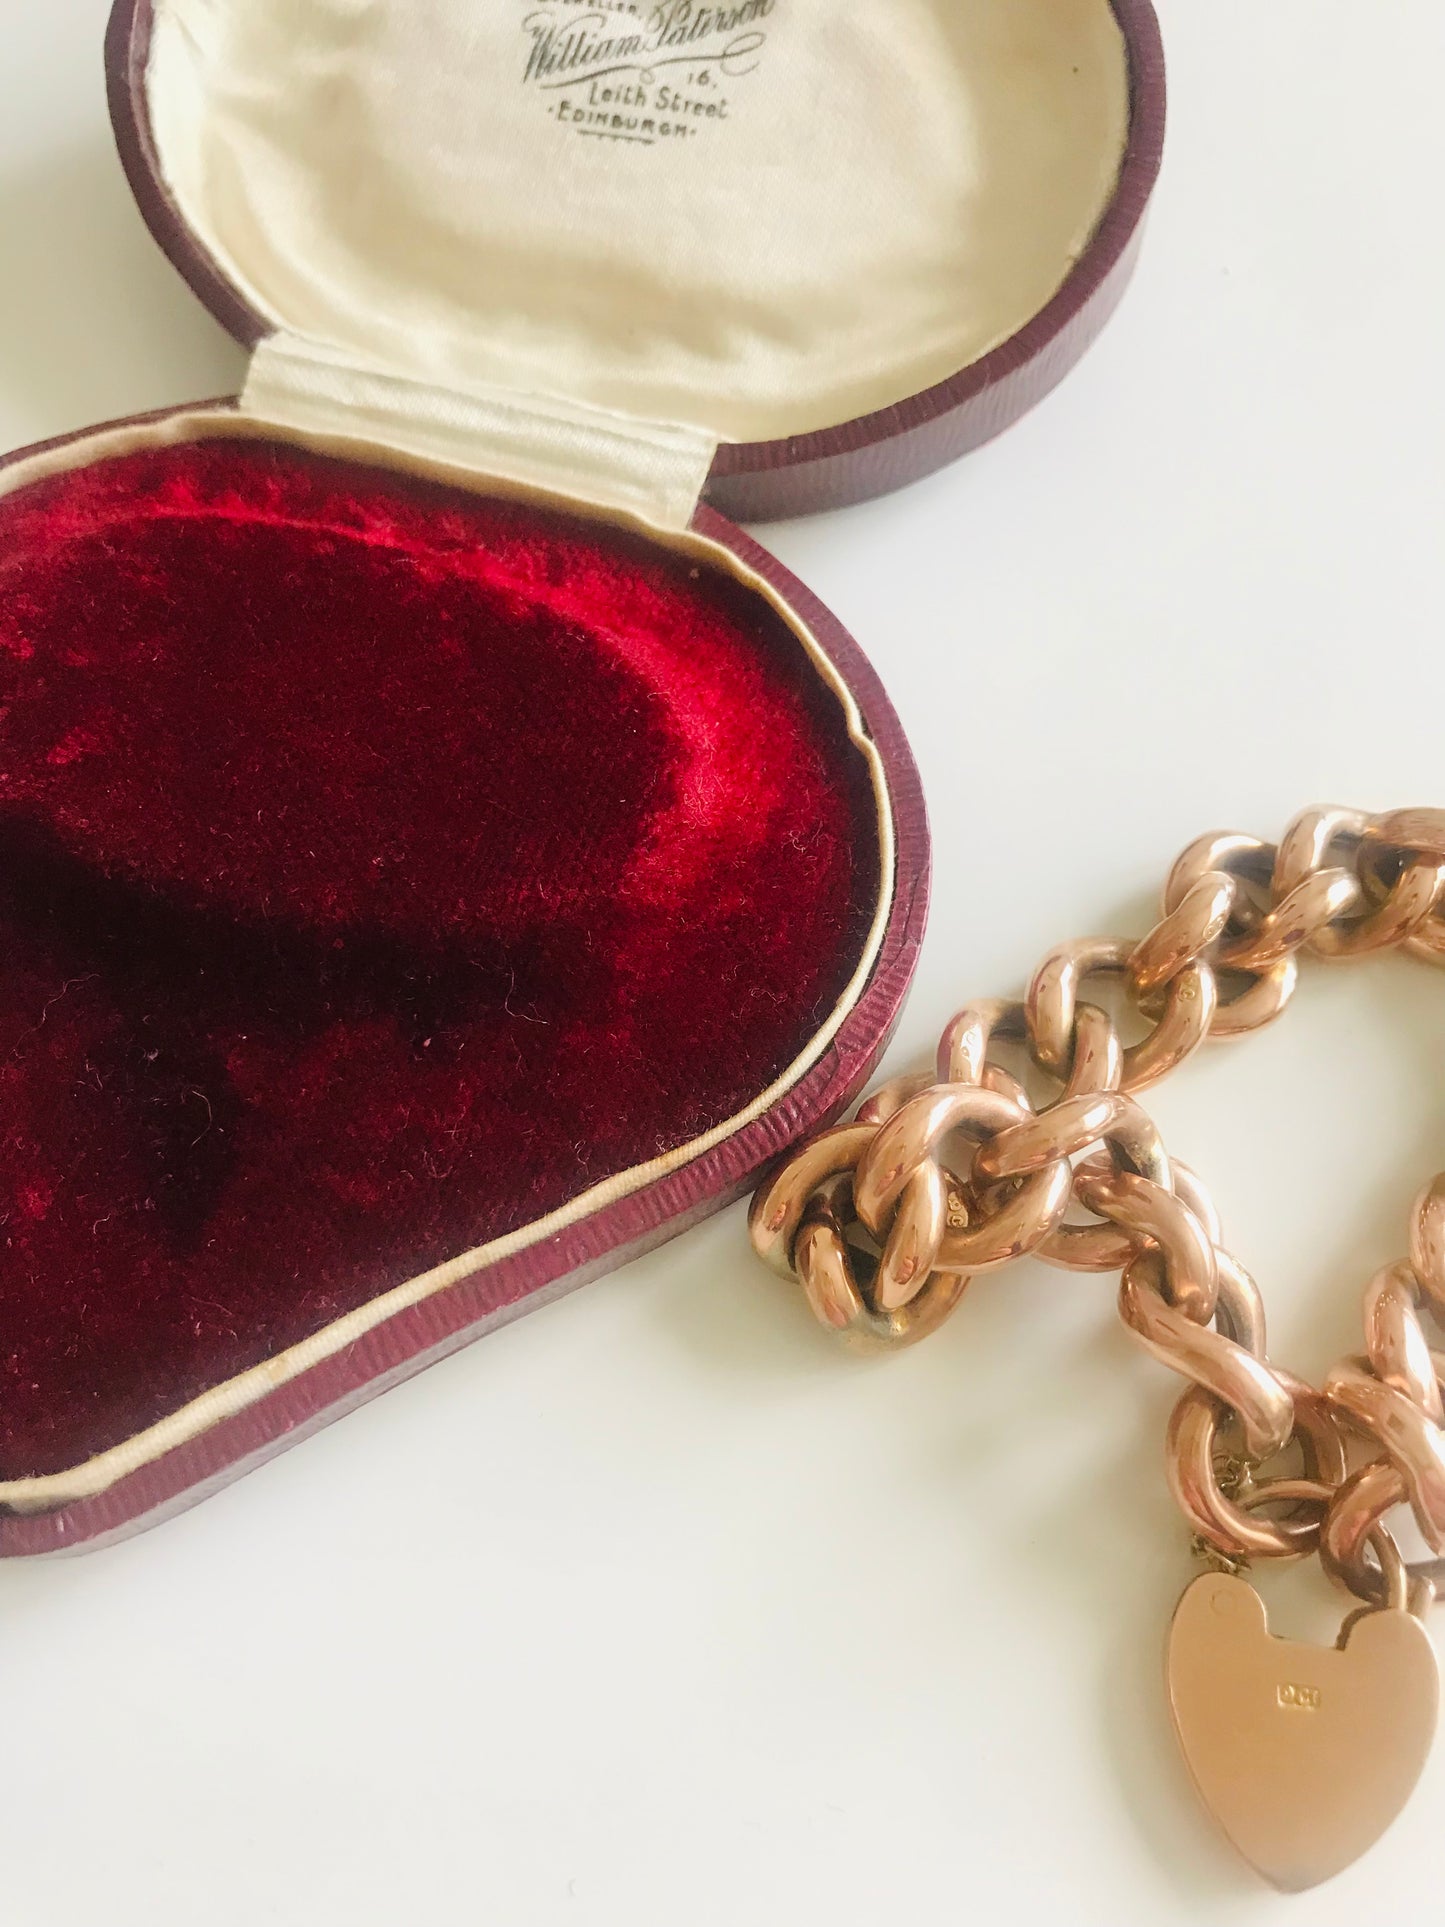 Klobiges Damen-Charmarmband aus 9-karätigem Gold in der originalen roten herzförmigen Box